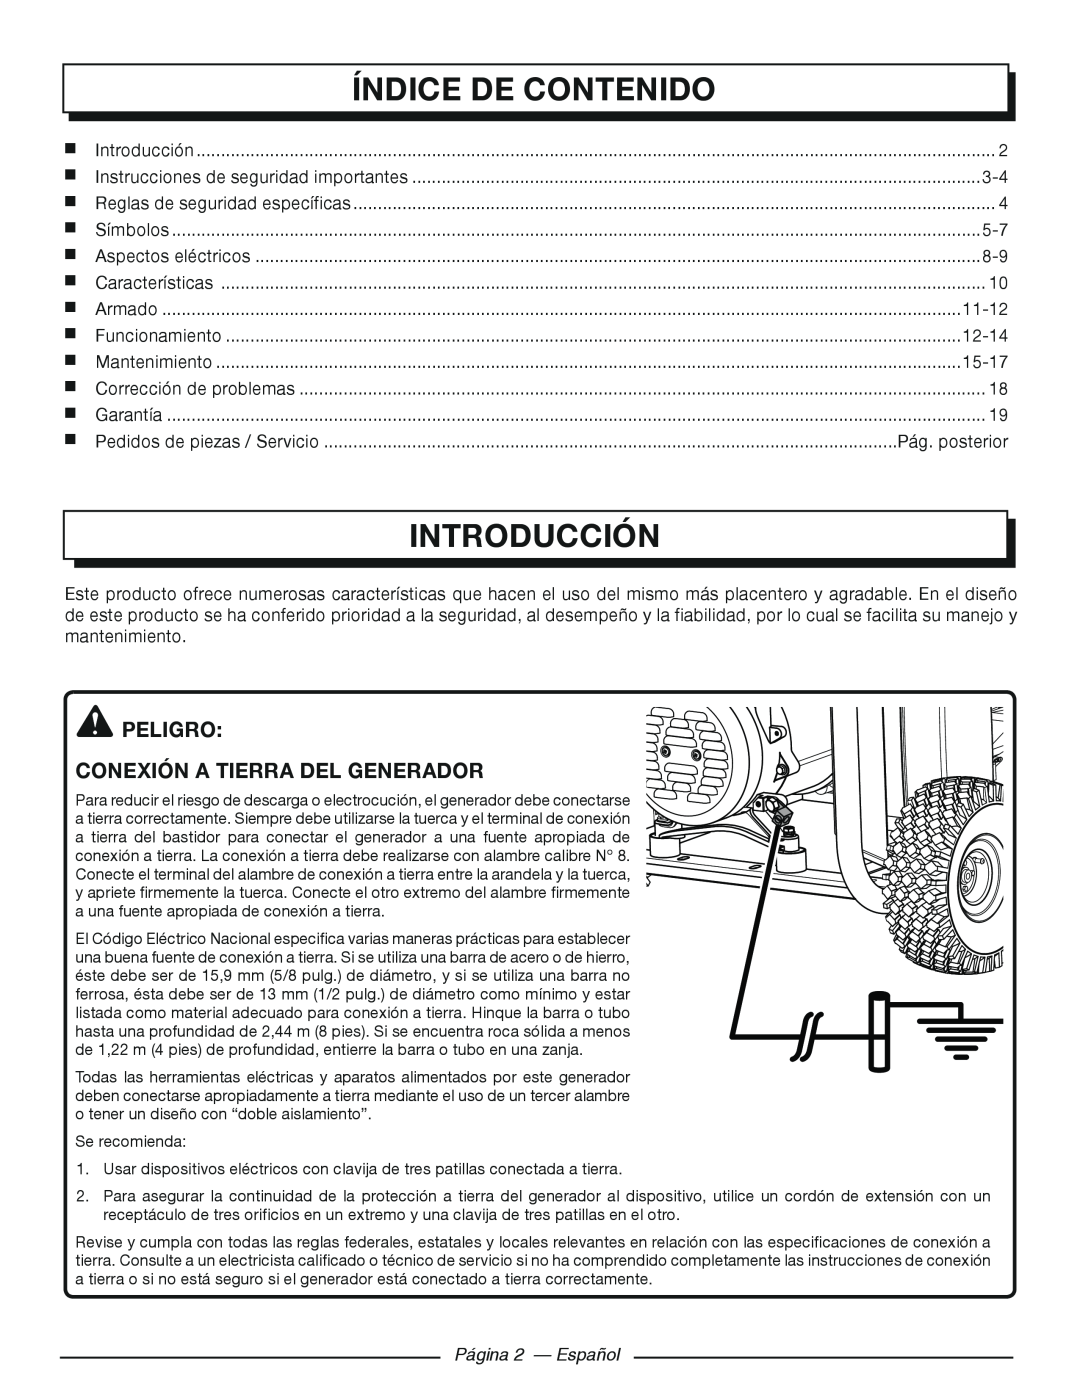 Homelite HGCA3000 Índice De Contenido, Introducción, peligro Conexión a tierra del generador, Pág. posterior, 11-12, 12-14 